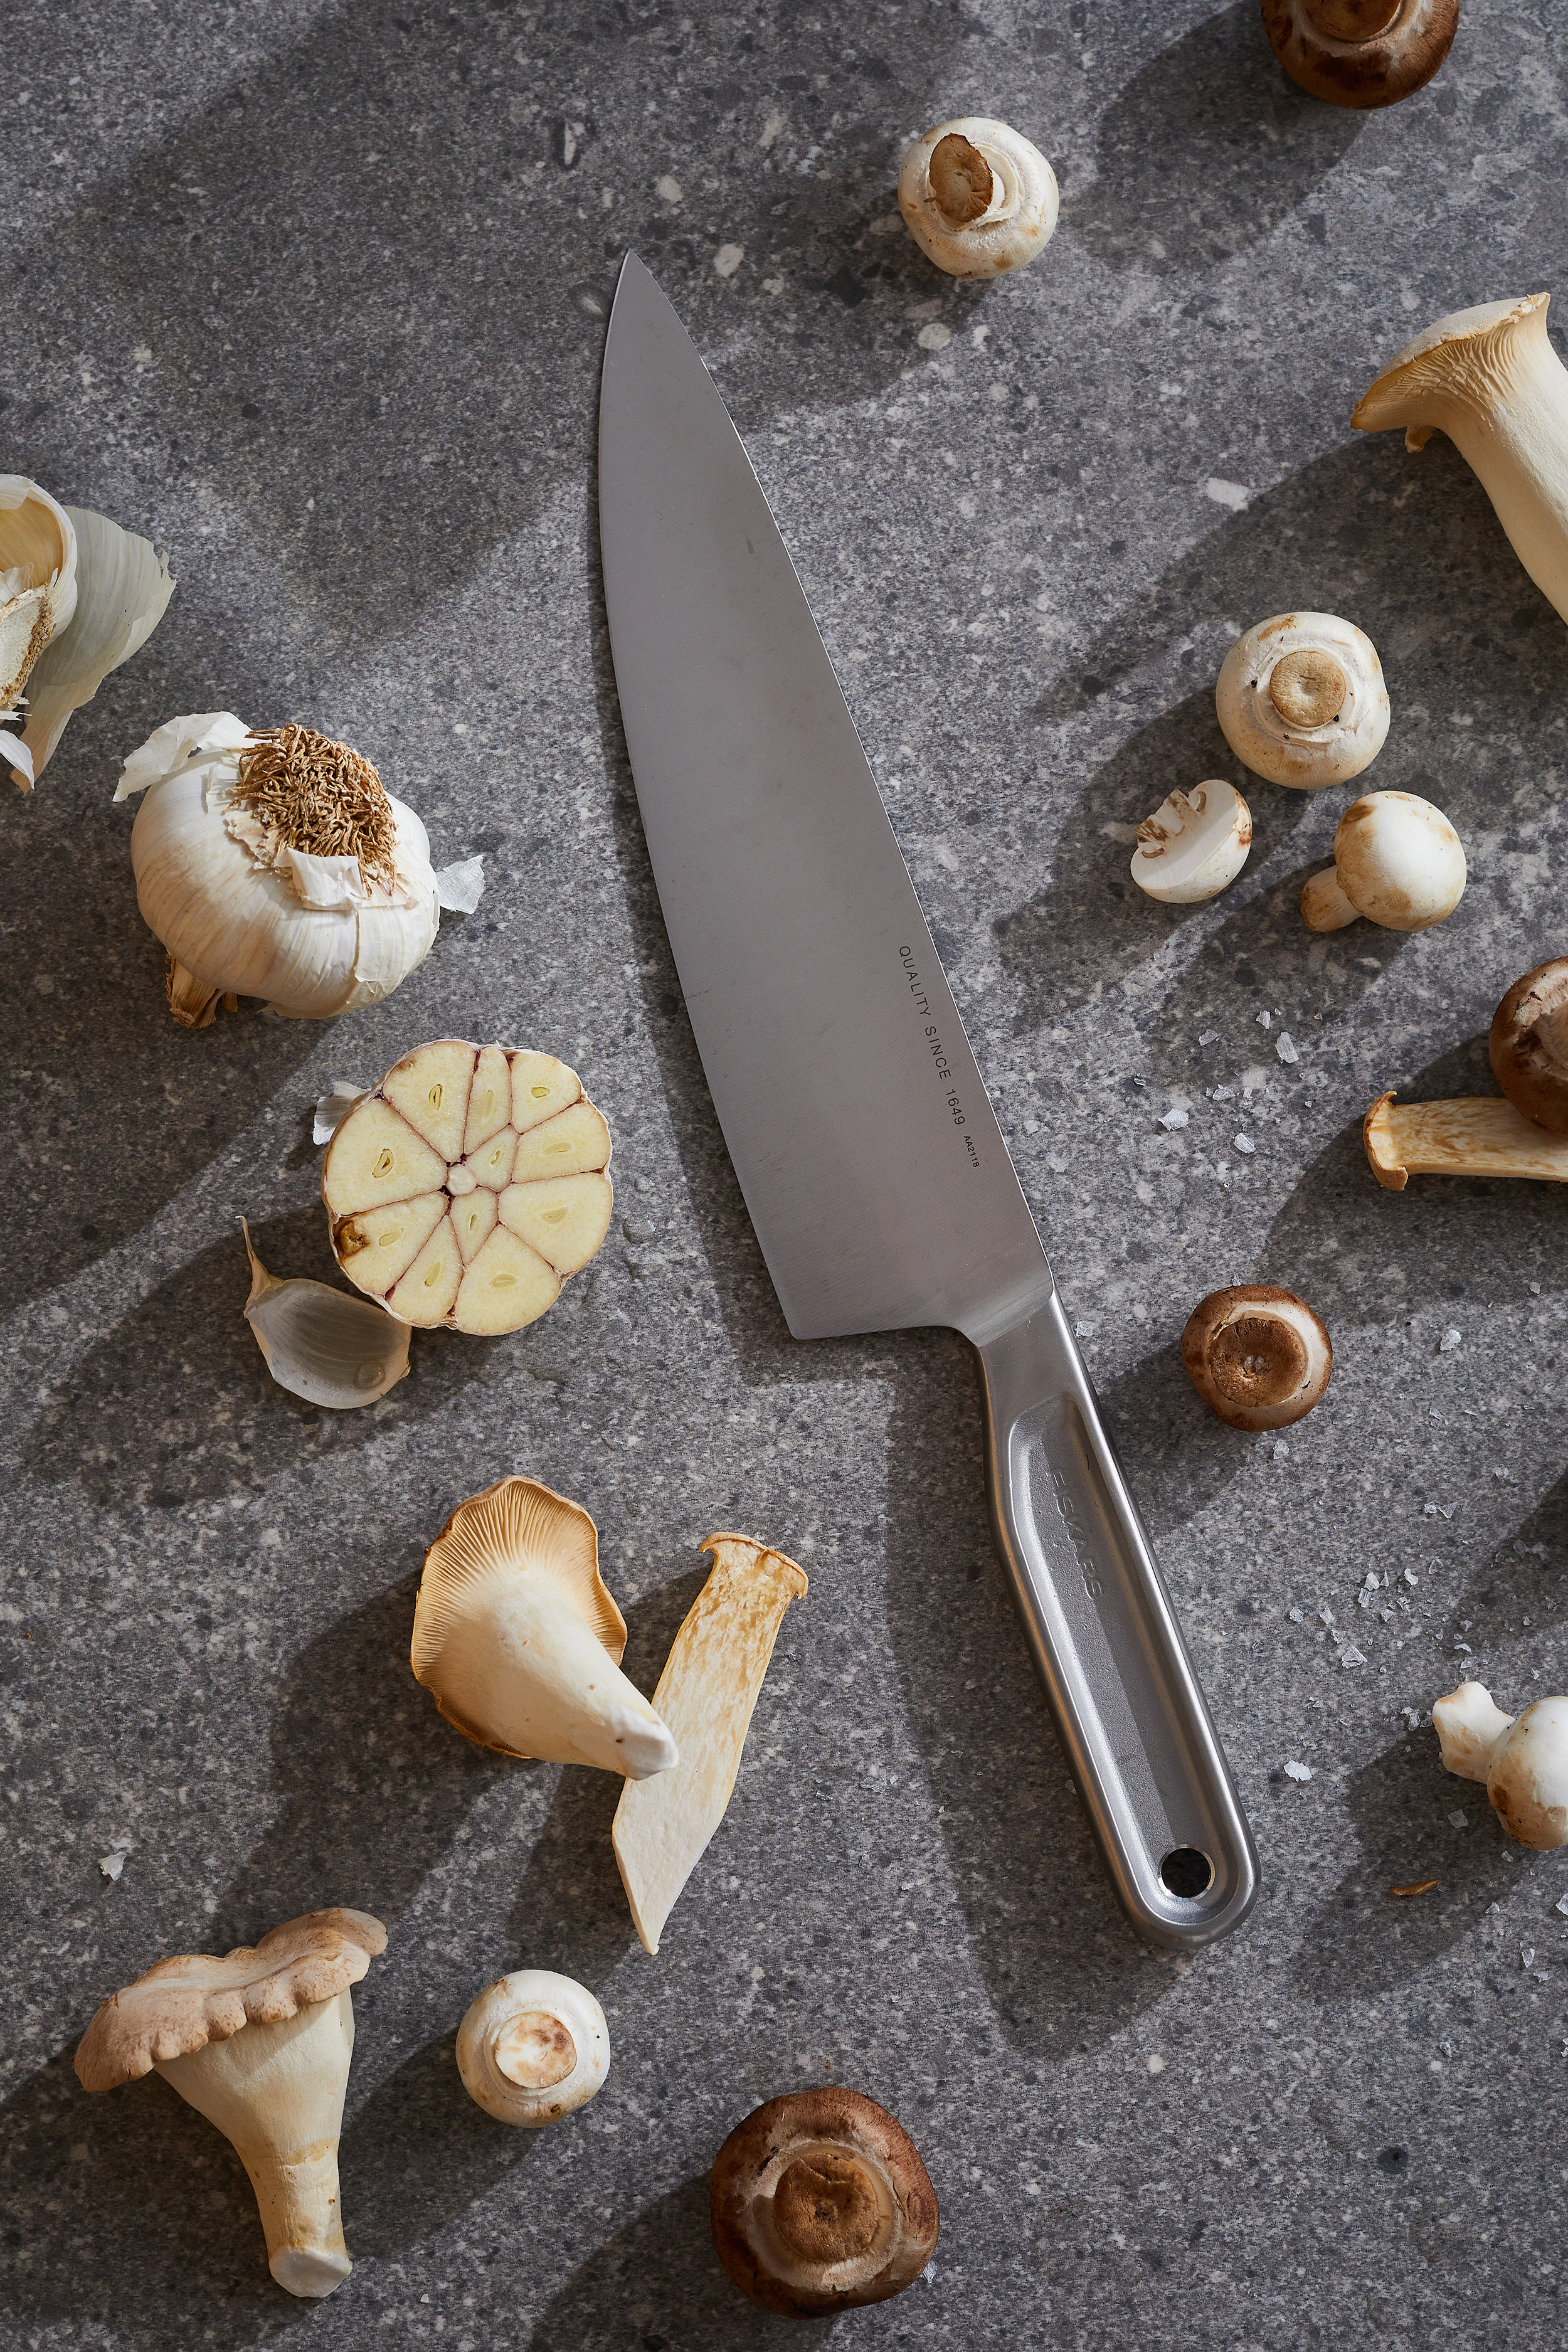 Fiskars All Steel Small Chef Knife